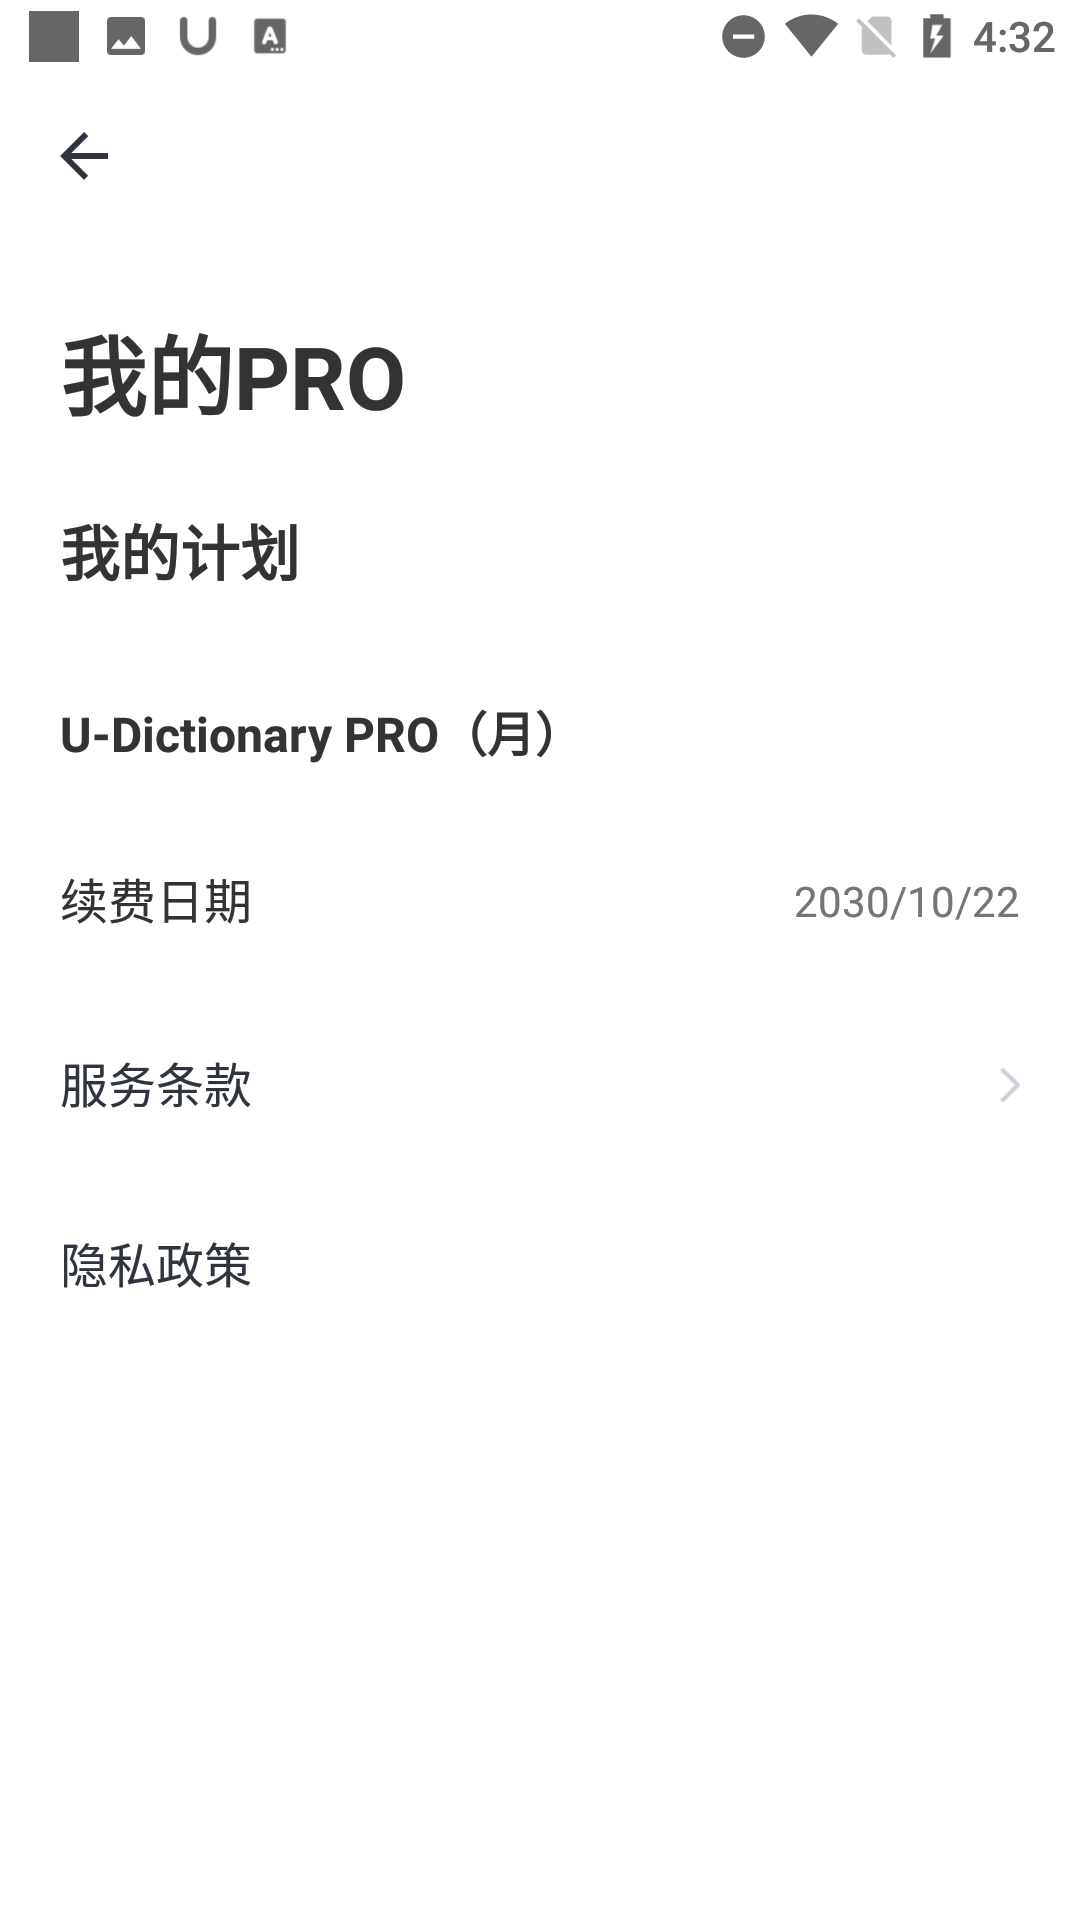 有道词典 U Dictionary v6.0.1 国际版app 中文解锁版插图